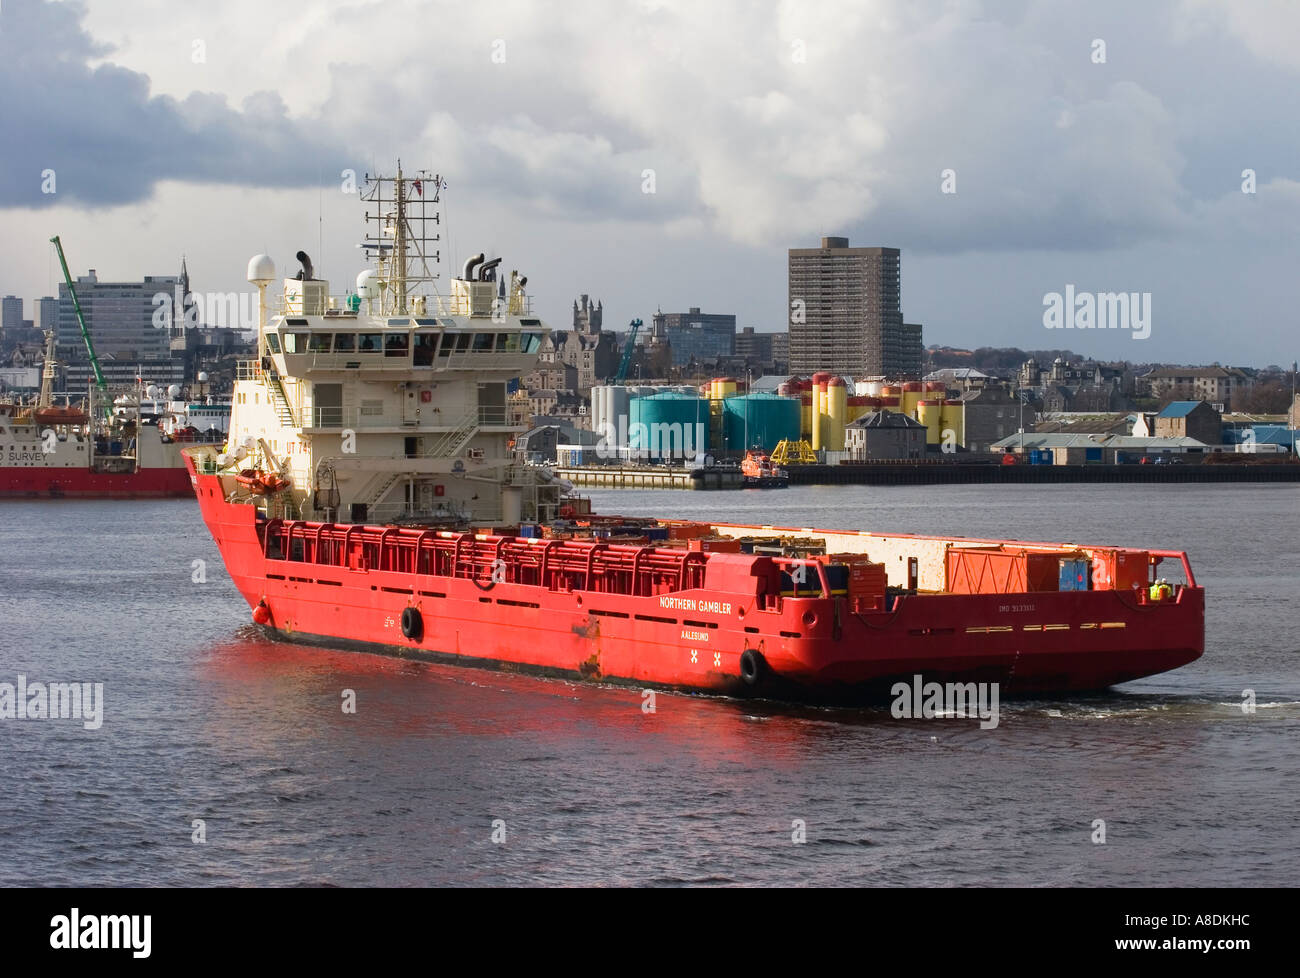 Offshore Supply Ship im Hafen von Aberdeen mit dem Stadtzentrum dahinter, Aberdeenshire, Schottland großbritannien Stockfoto